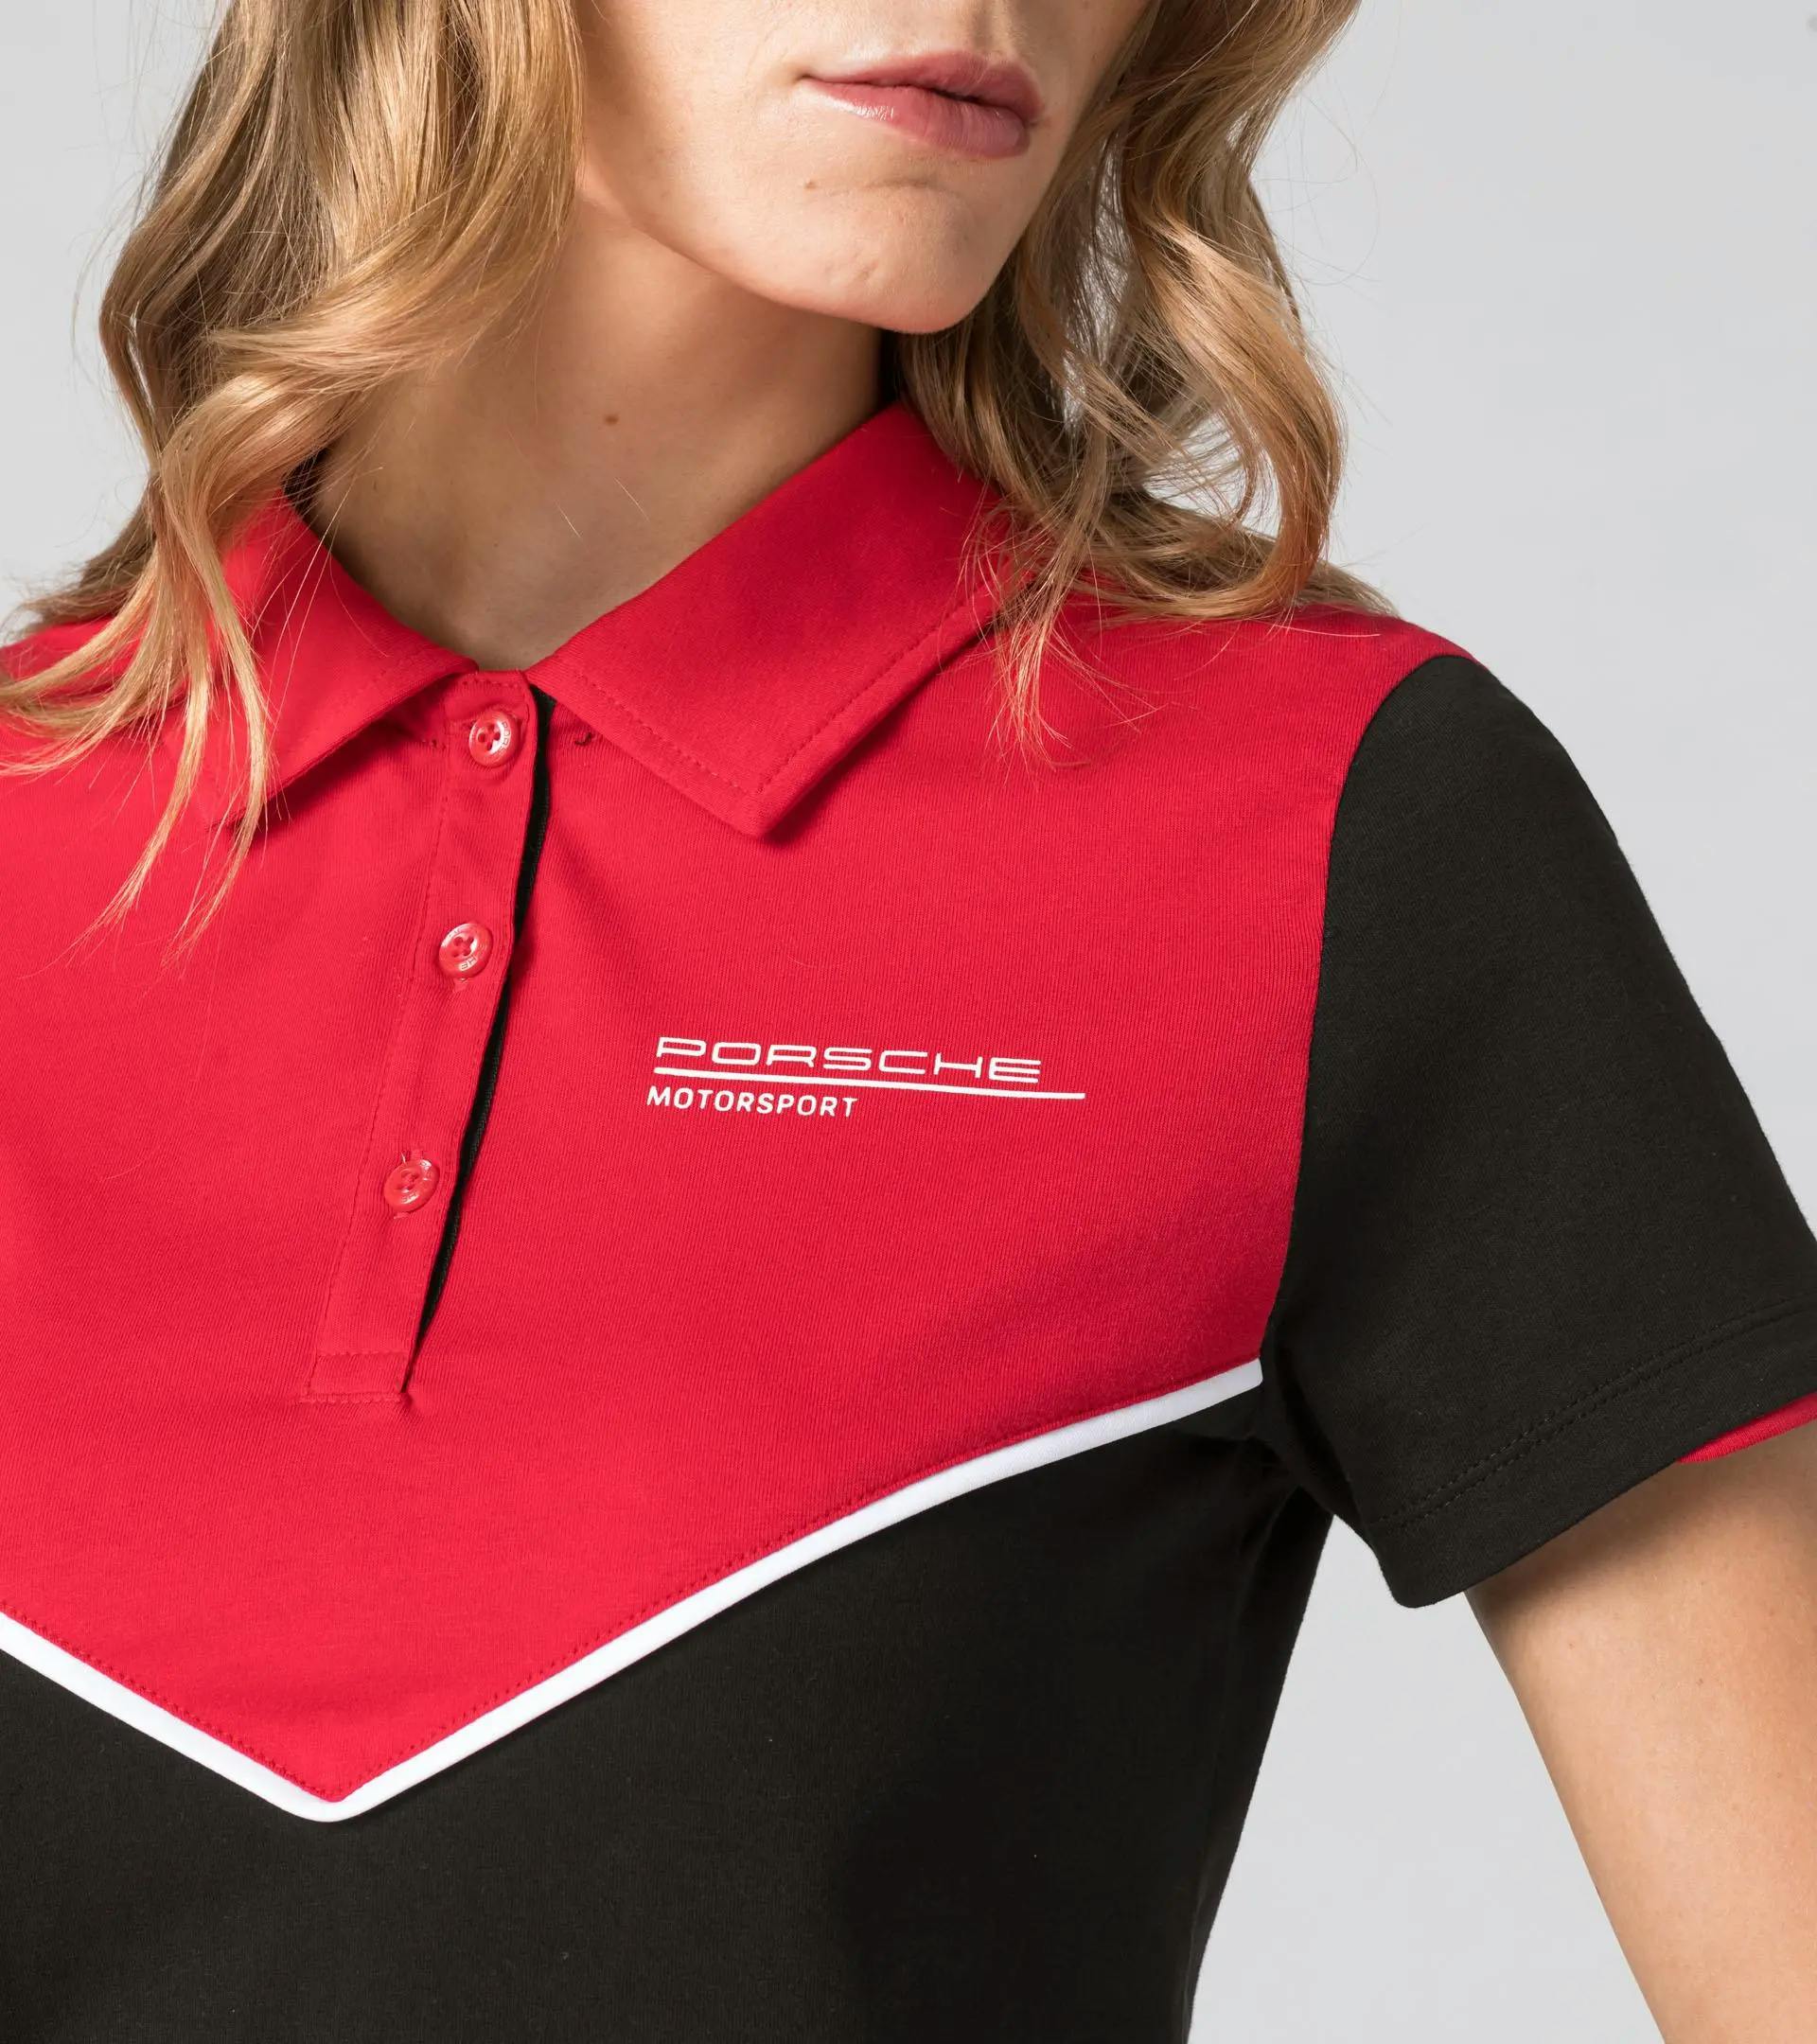 Women's Polo shirt – Motorsport Fanwear 3